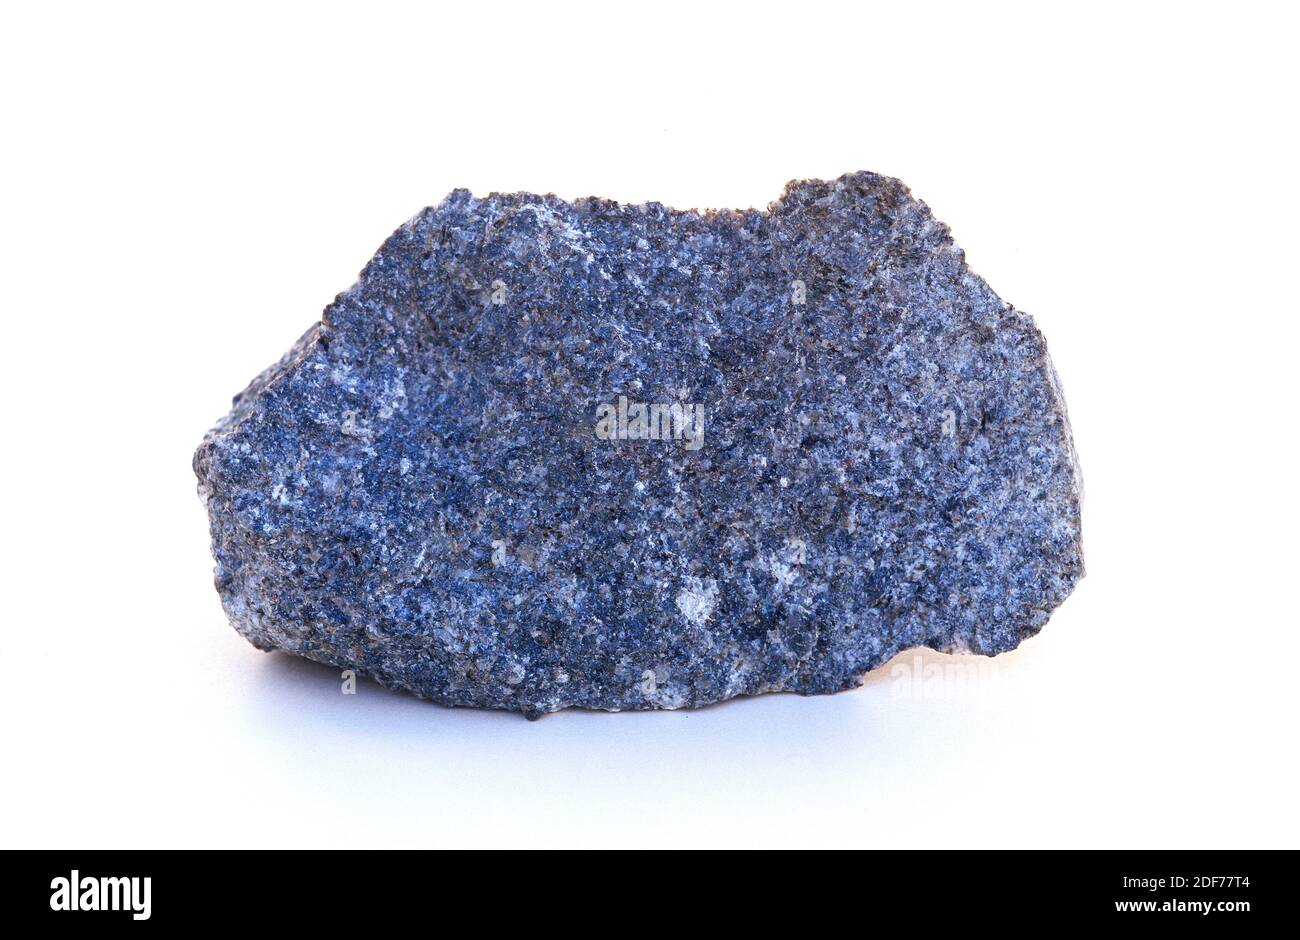 La diorite est une roche ignée intrusive. Sa composition est intermédiaire entre le gabbro et le granit. Exemple. Banque D'Images